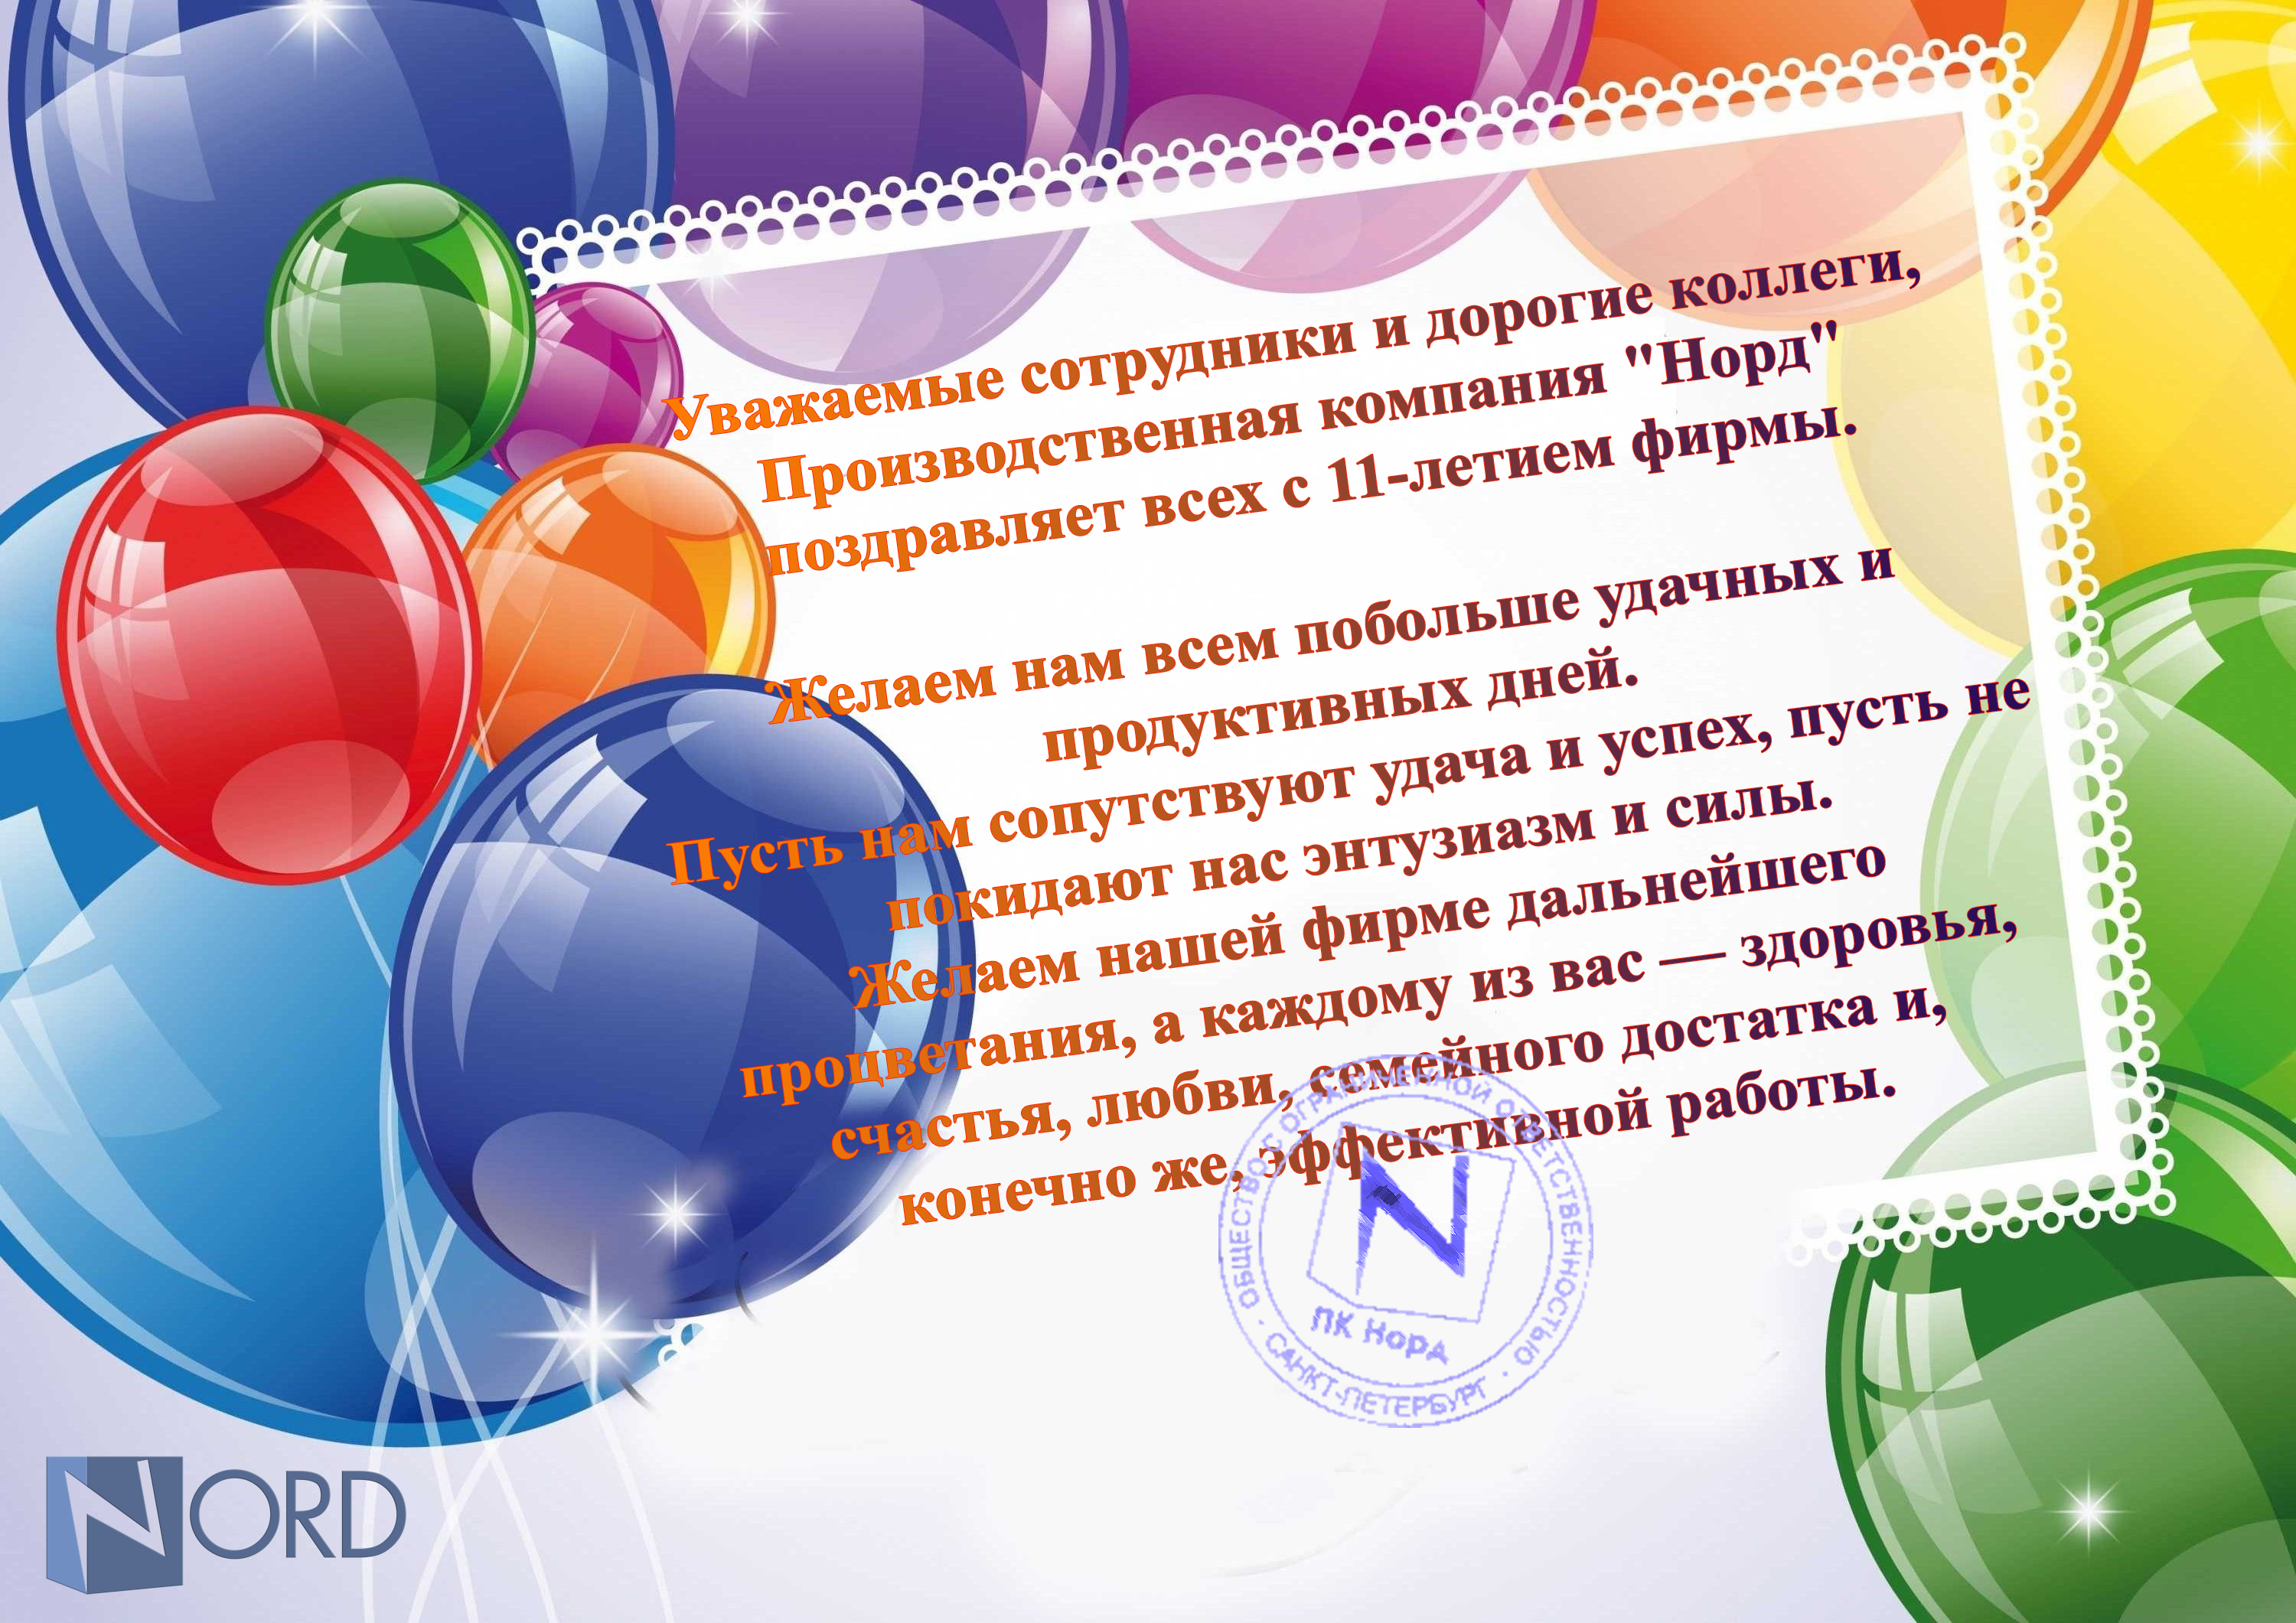 ООО "ПК НОРД" отмечает свой одиннадцатый год плодотворной деятельности.